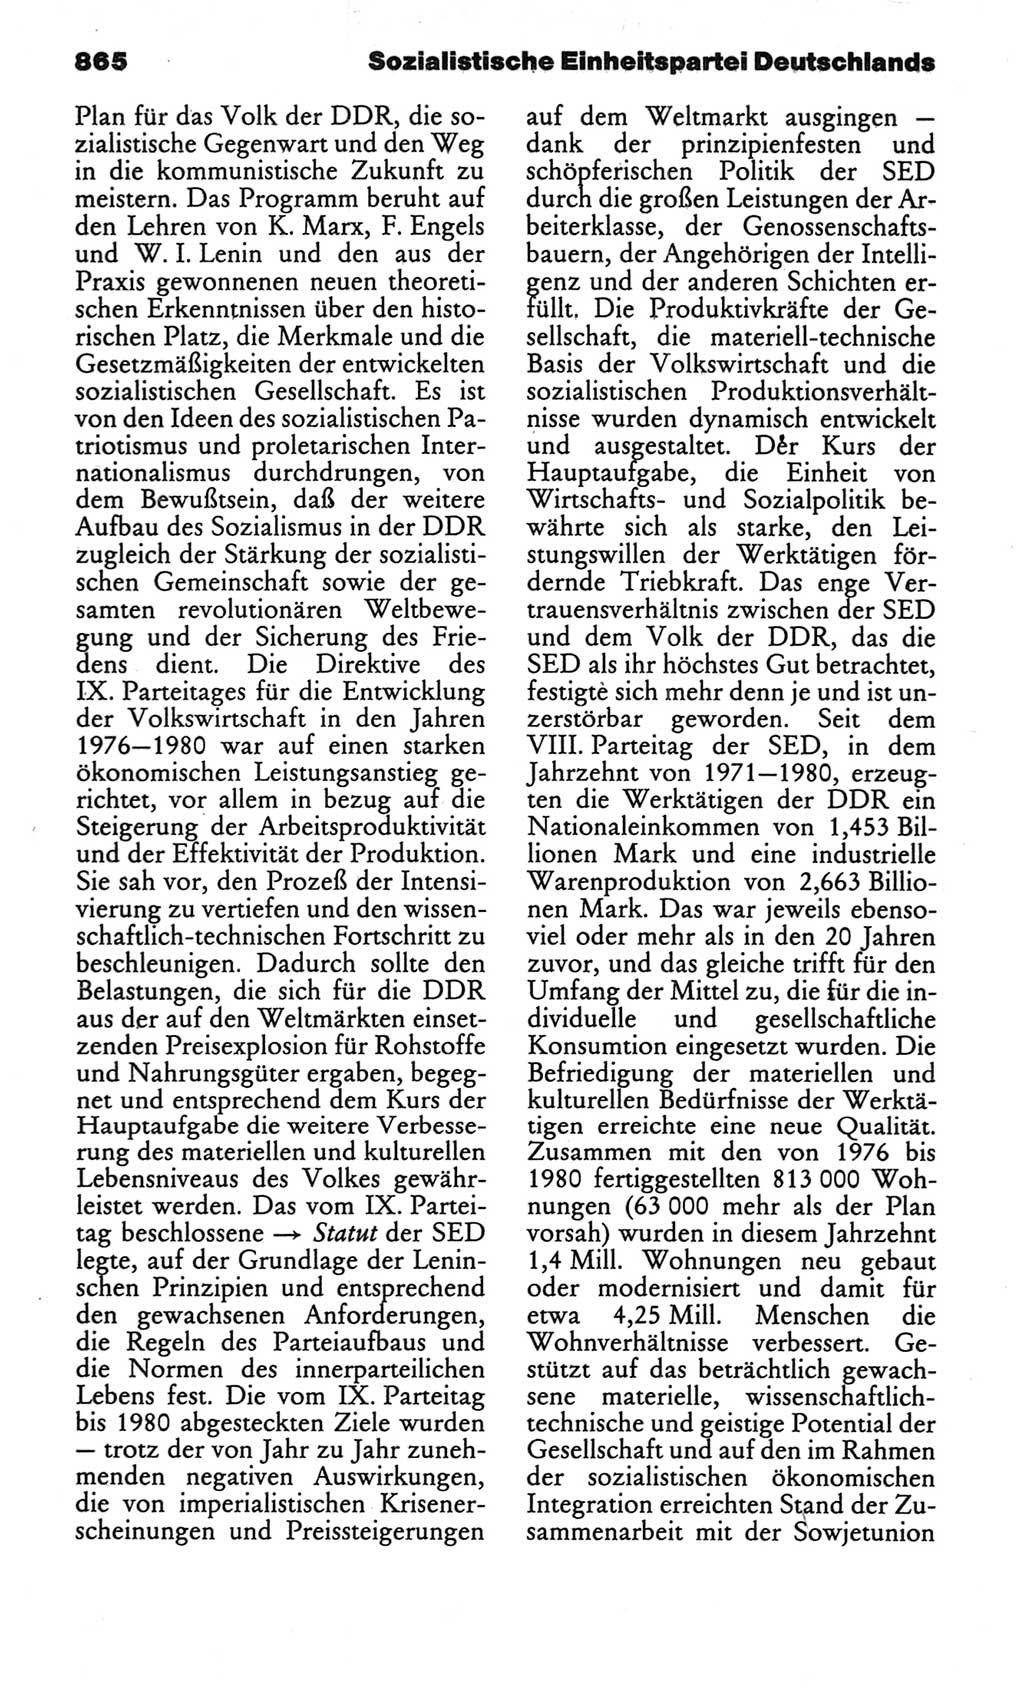 Kleines politisches Wörterbuch [Deutsche Demokratische Republik (DDR)] 1986, Seite 865 (Kl. pol. Wb. DDR 1986, S. 865)